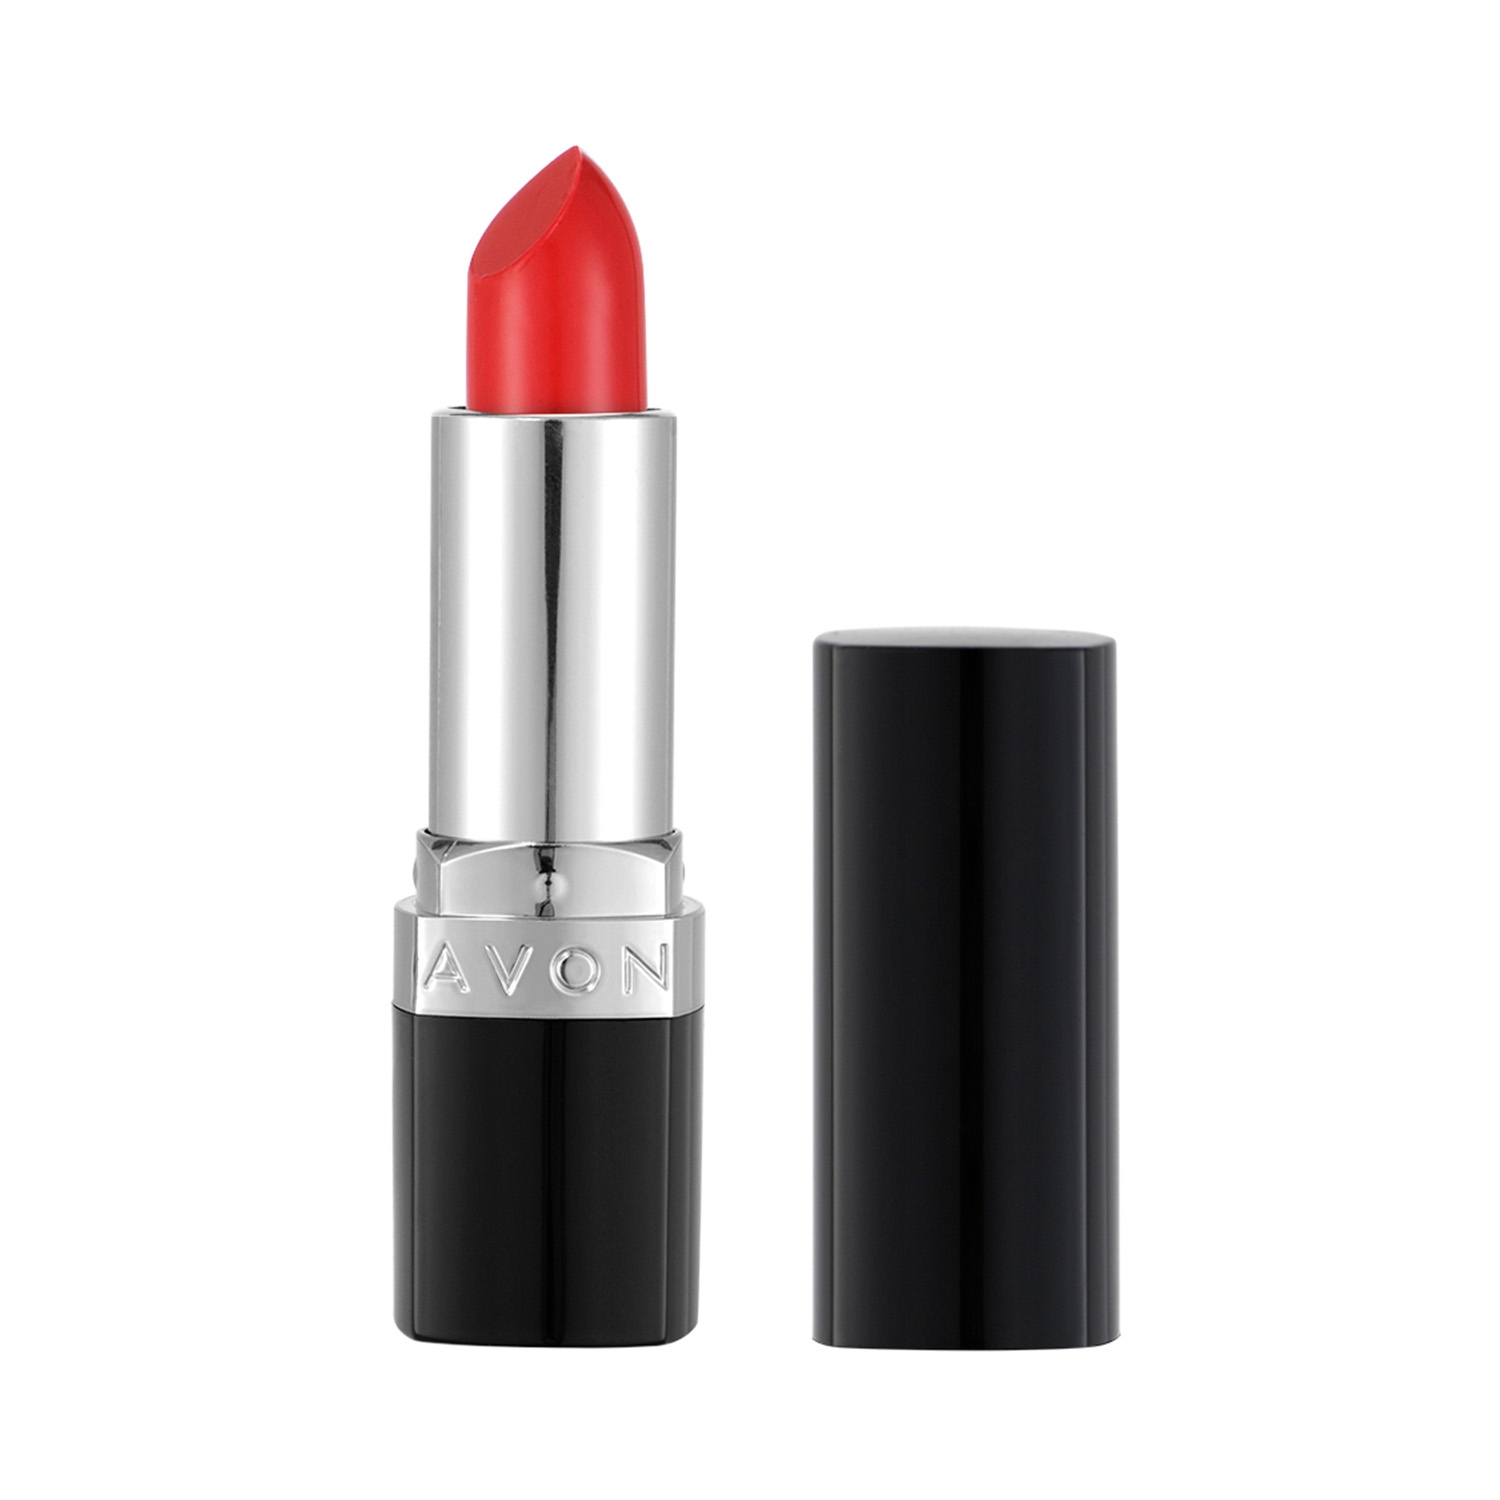 Avon | Avon True Color Lipstick SPF 15 - Lava Love (3.8g)